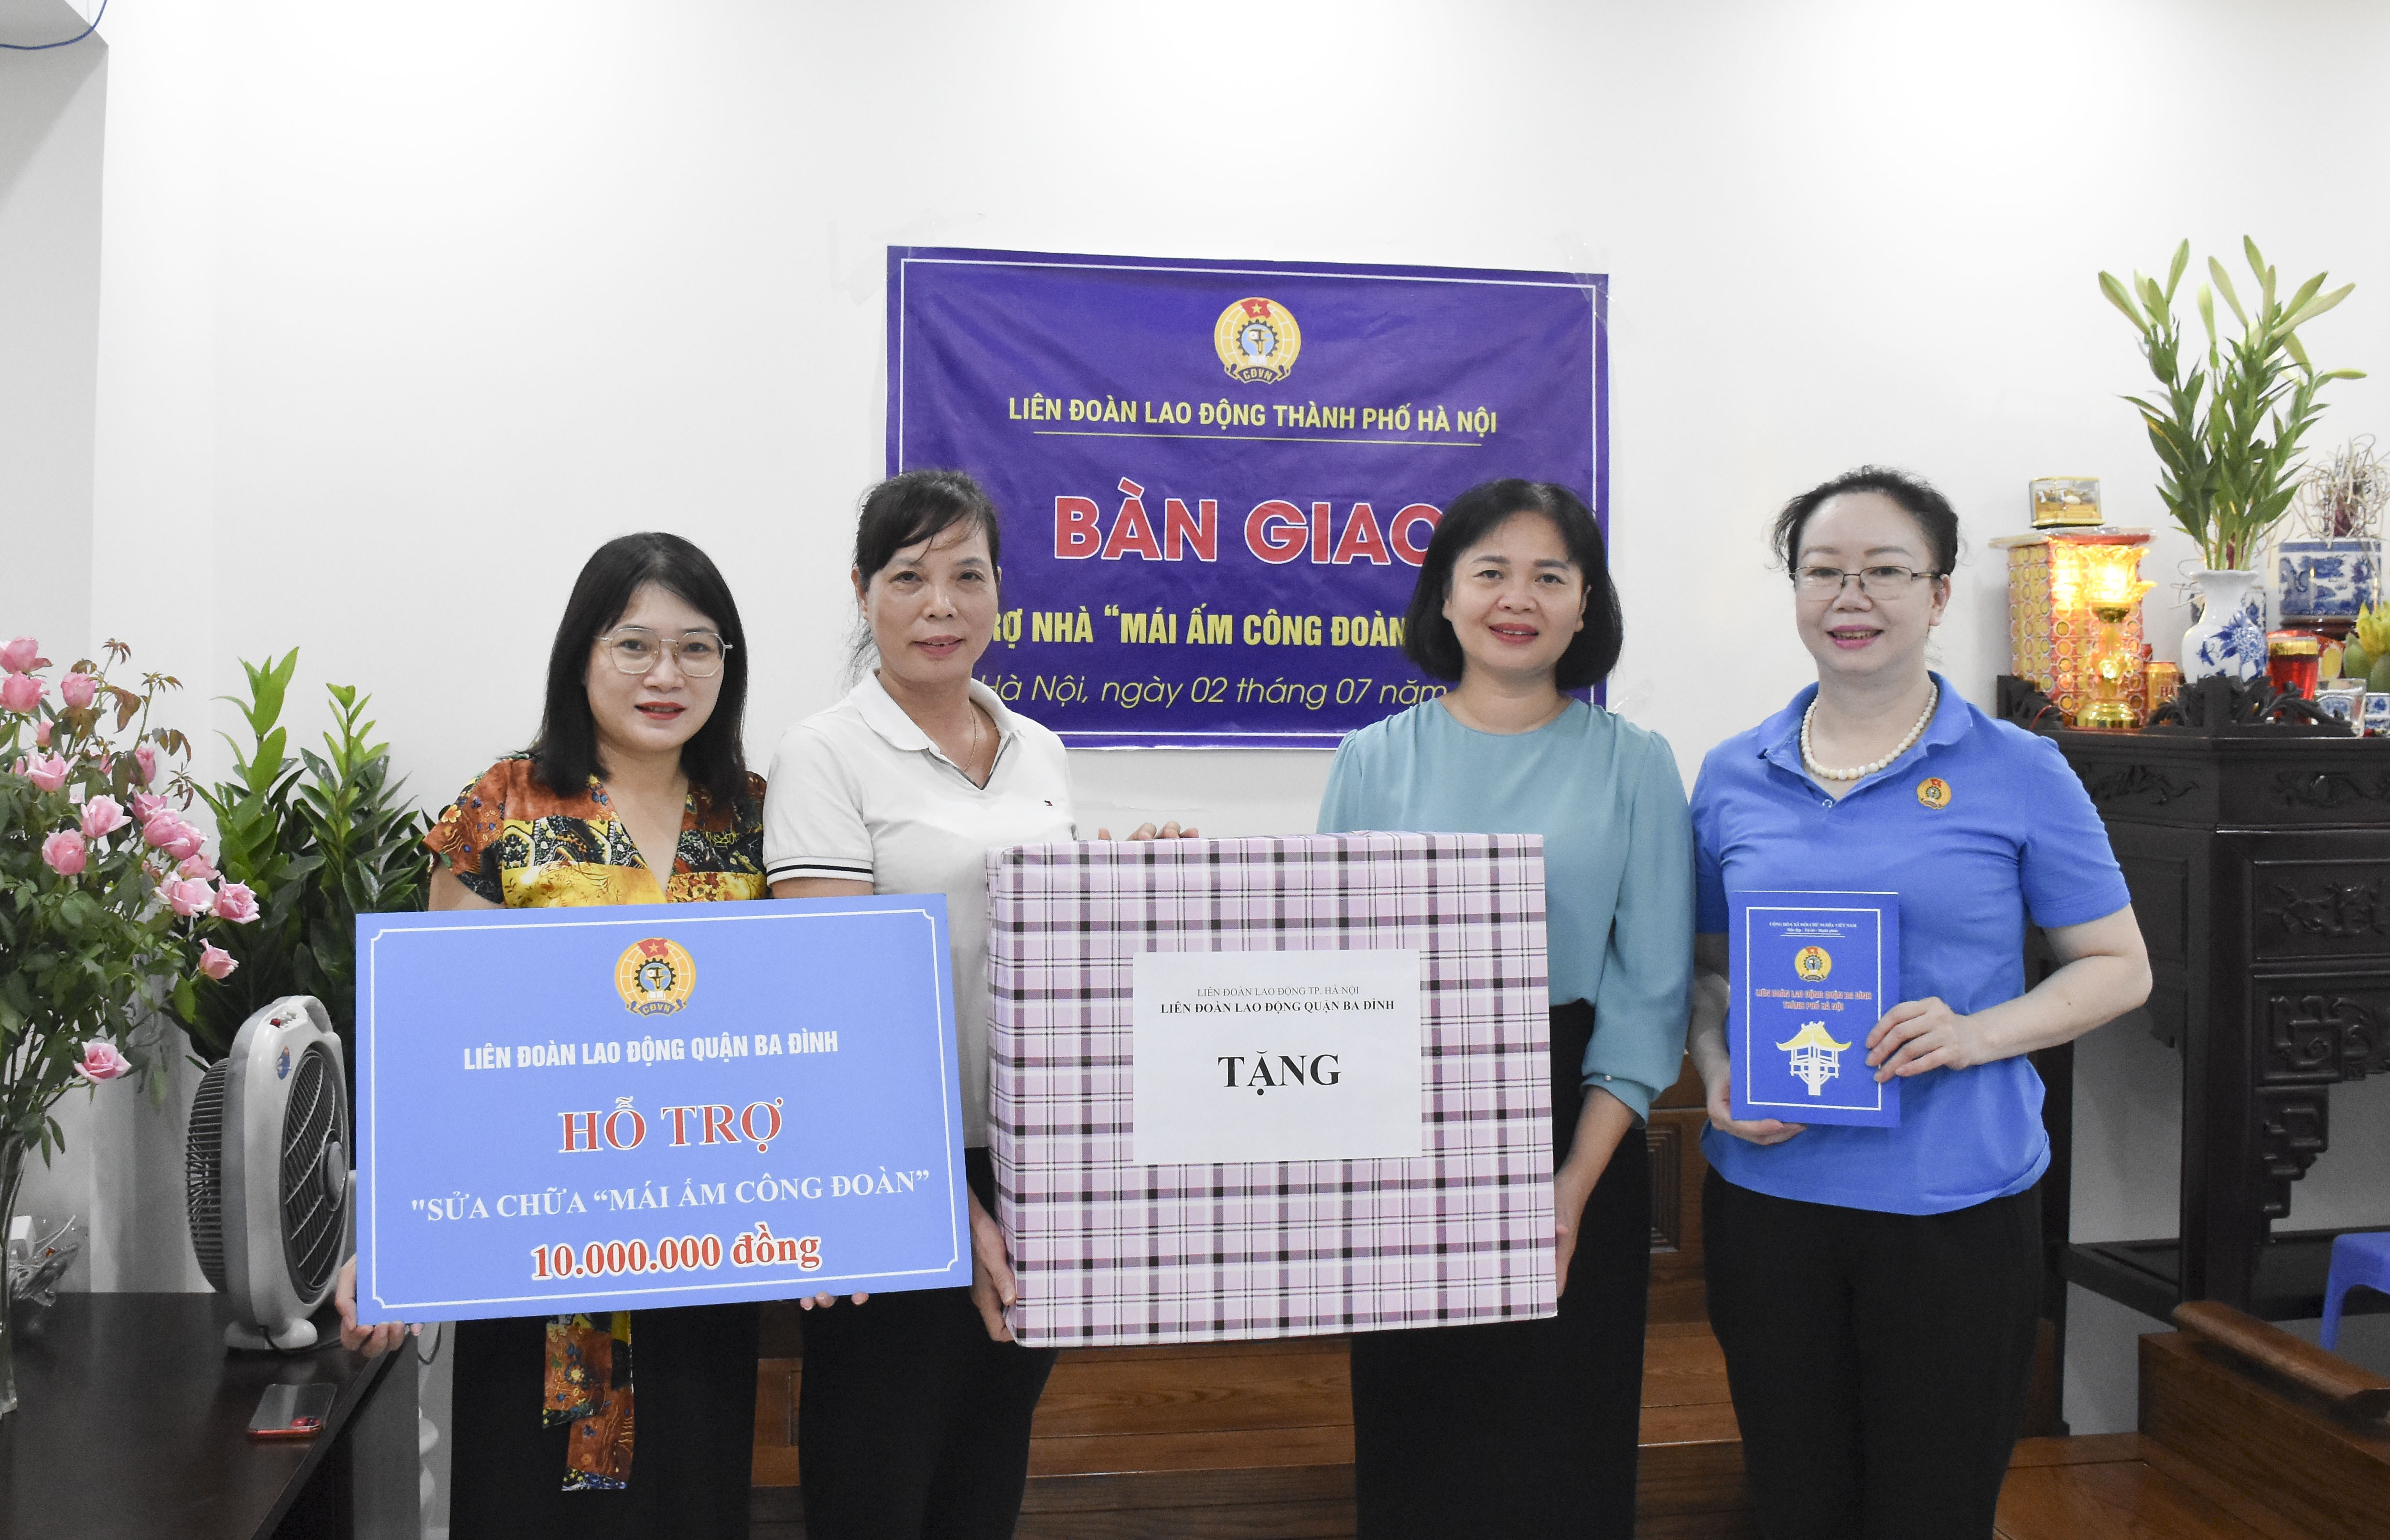 Trao hỗ trợ kinh phí sửa chữa “Mái ấm Công đoàn” cho đoàn viên công đoàn quận Ba Đình